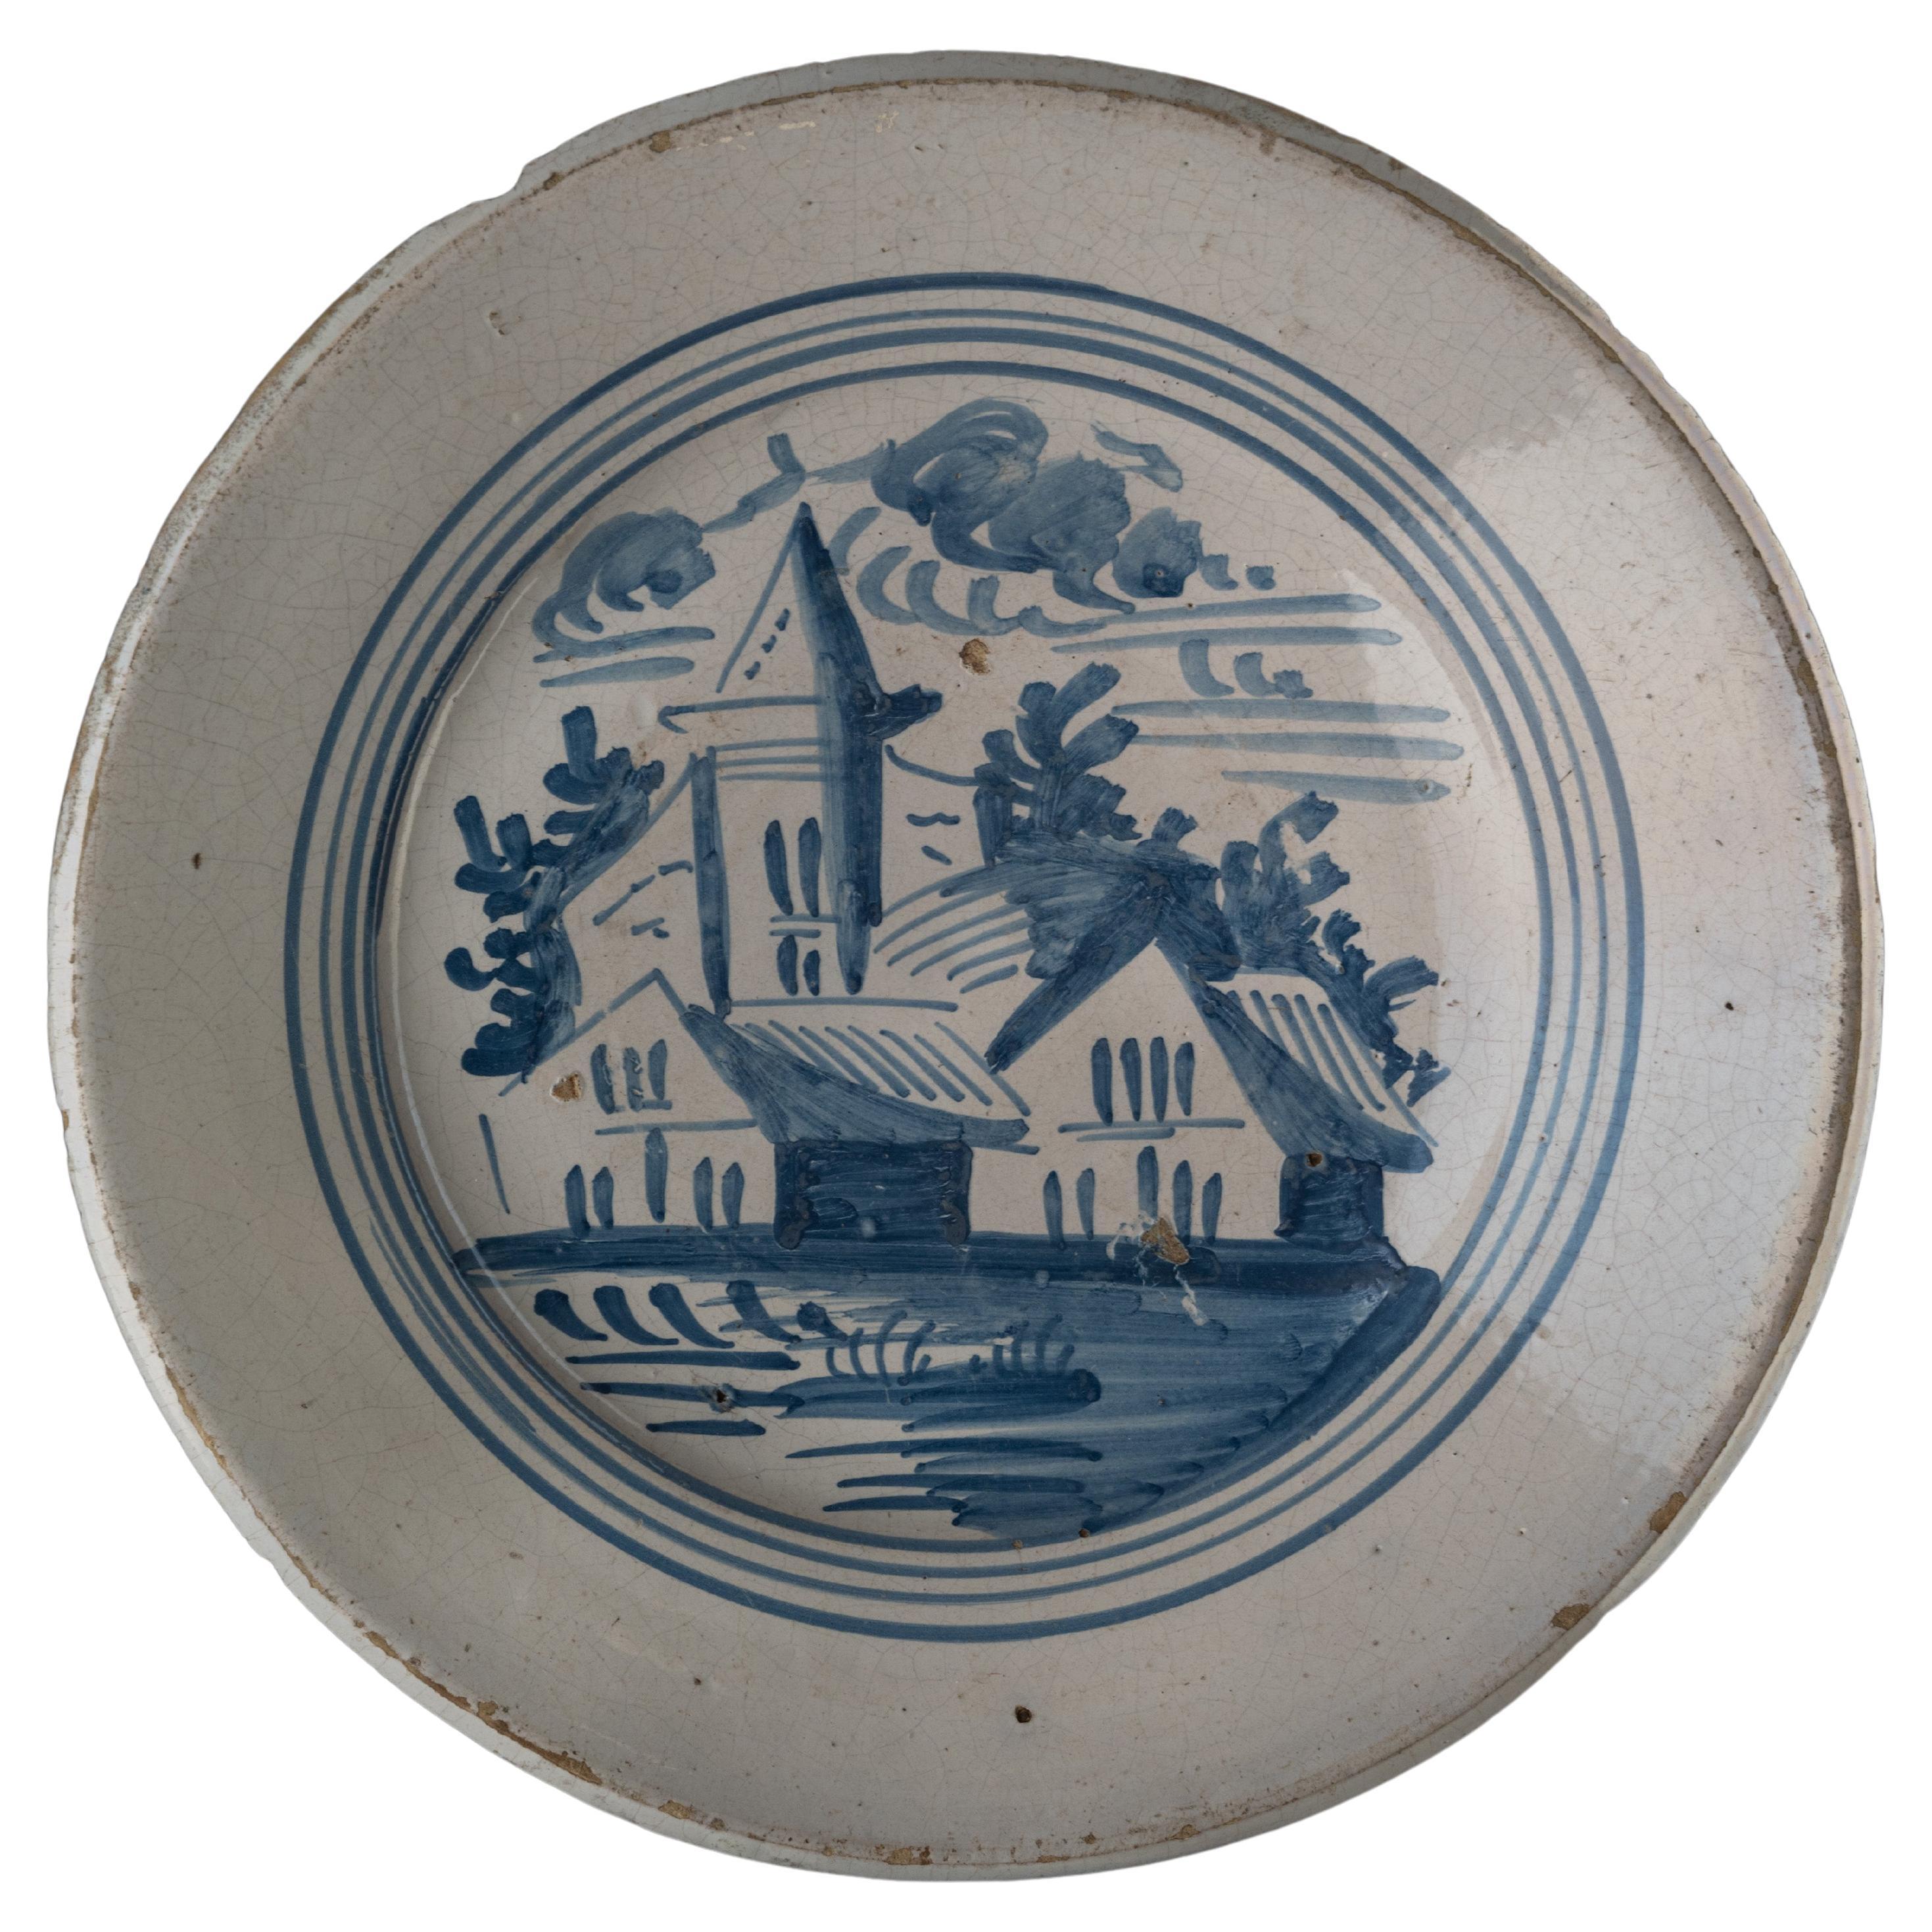 Delft Blue and White Landscape Dish, Makkum, 1775-1800 Tichelaar Pottery